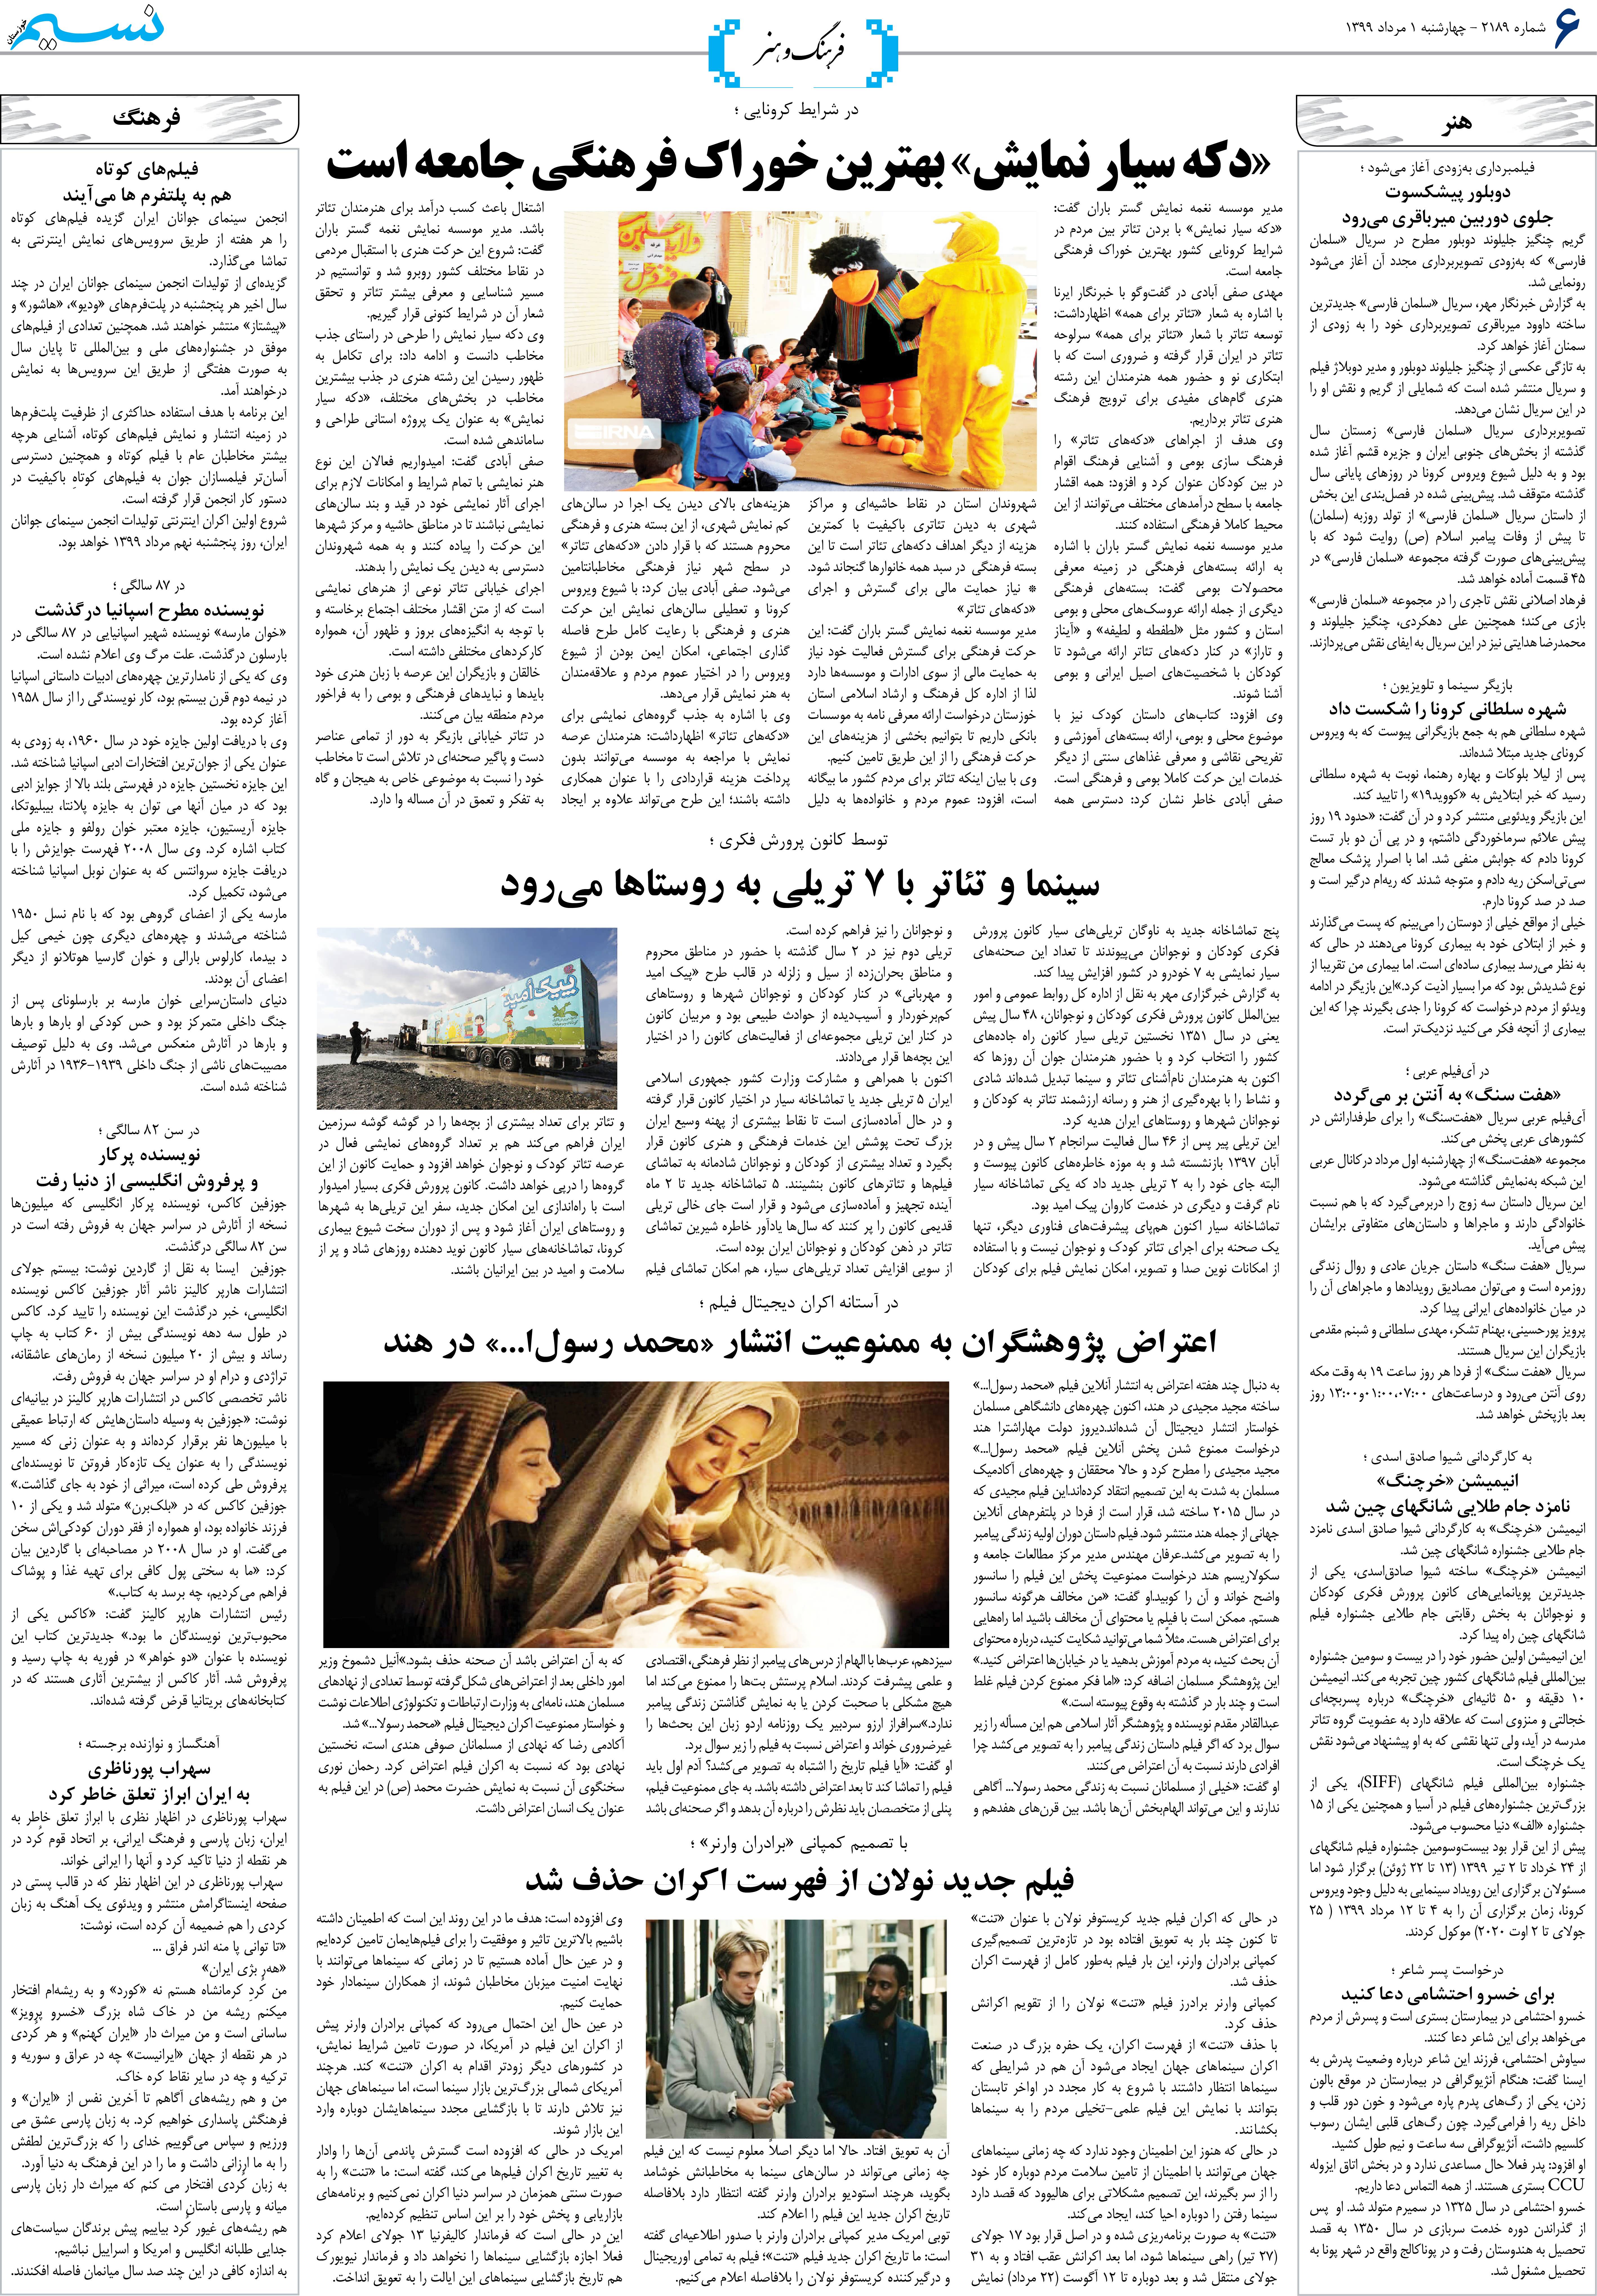 صفحه فرهنگ و هنر روزنامه نسیم شماره 2189